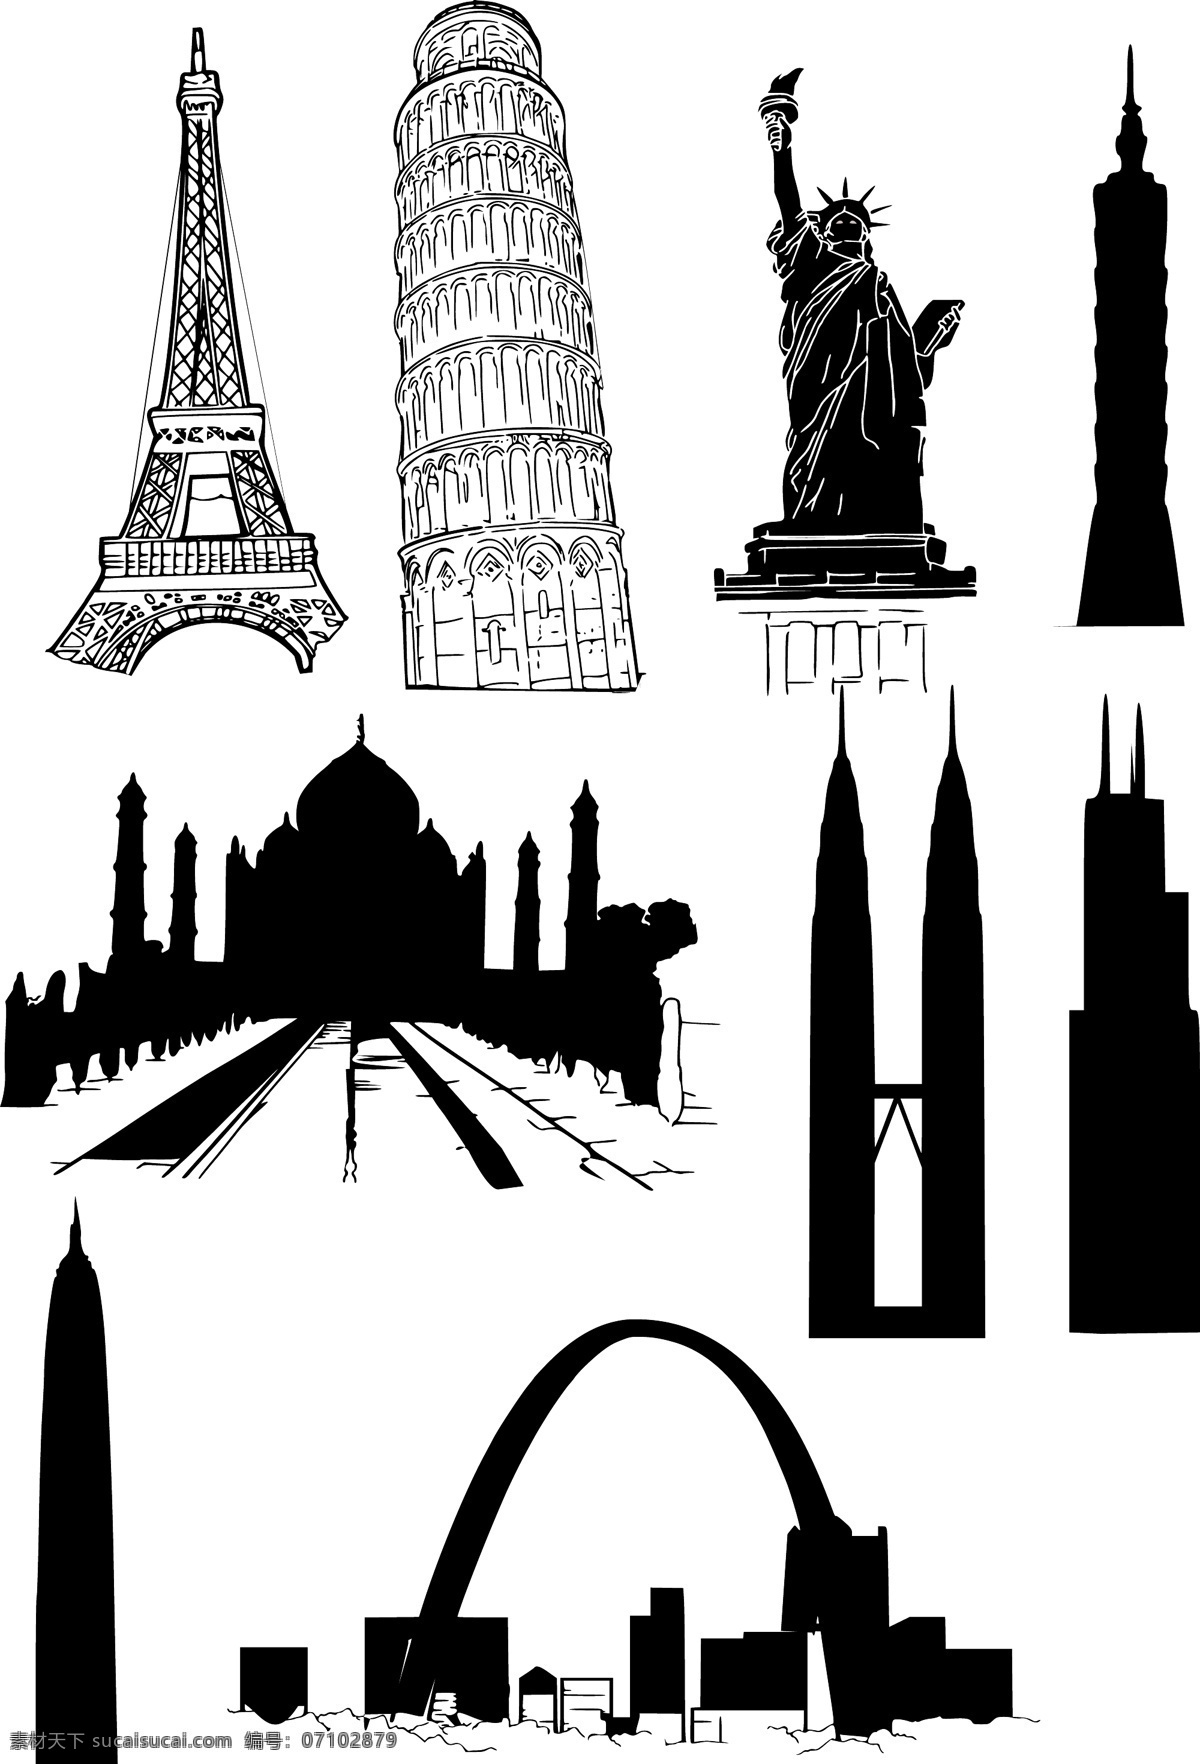 国外 著名 建筑 矢量 埃菲尔铁塔 比萨斜塔 材料 建筑物 欧洲 外 钟楼 自由女神像 竞技场 著名的 矢量图 其他矢量图